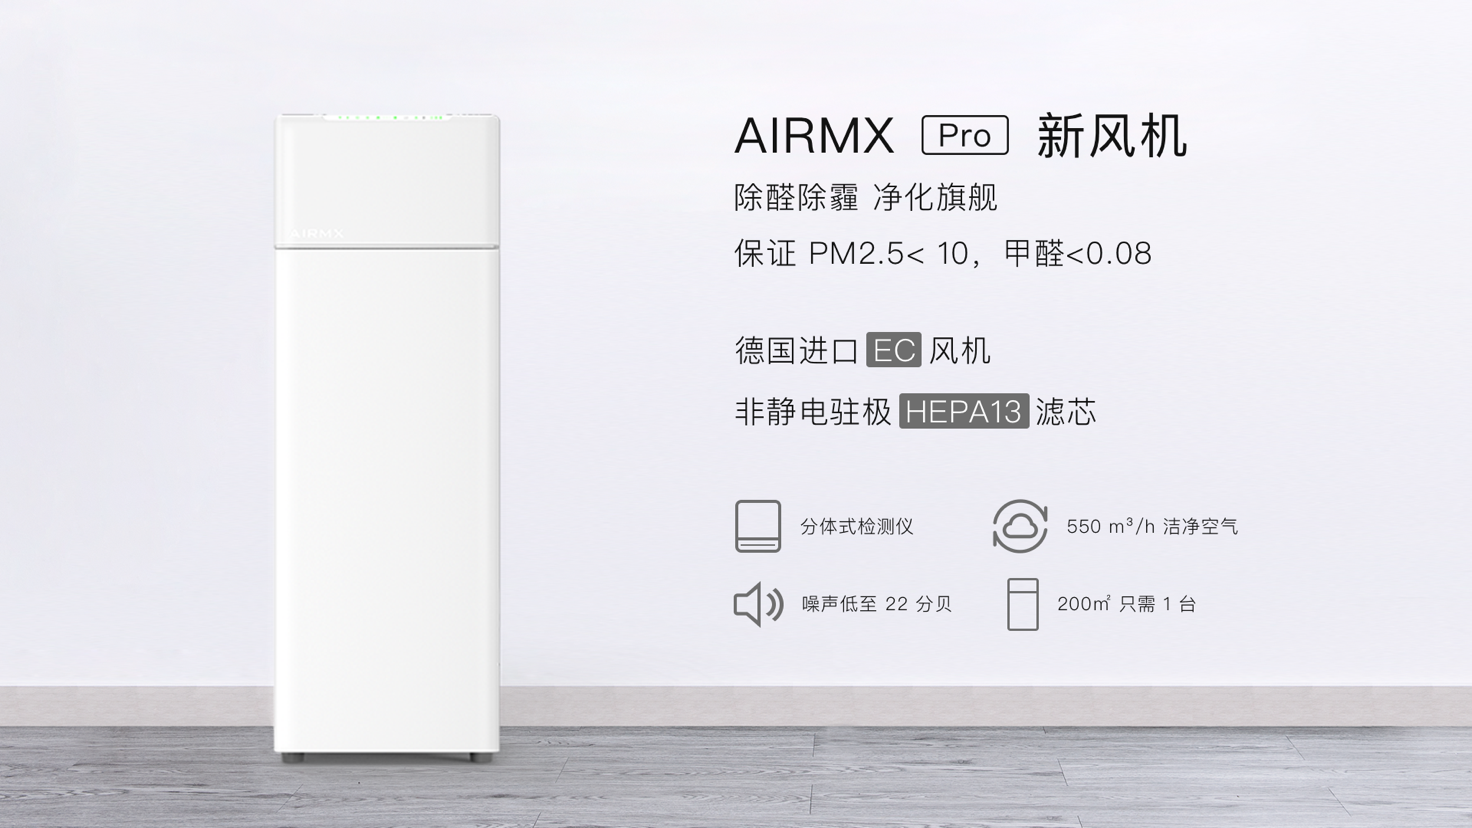 呼吸健康2.0时代 AIRMX发布后装式新风系统旗舰